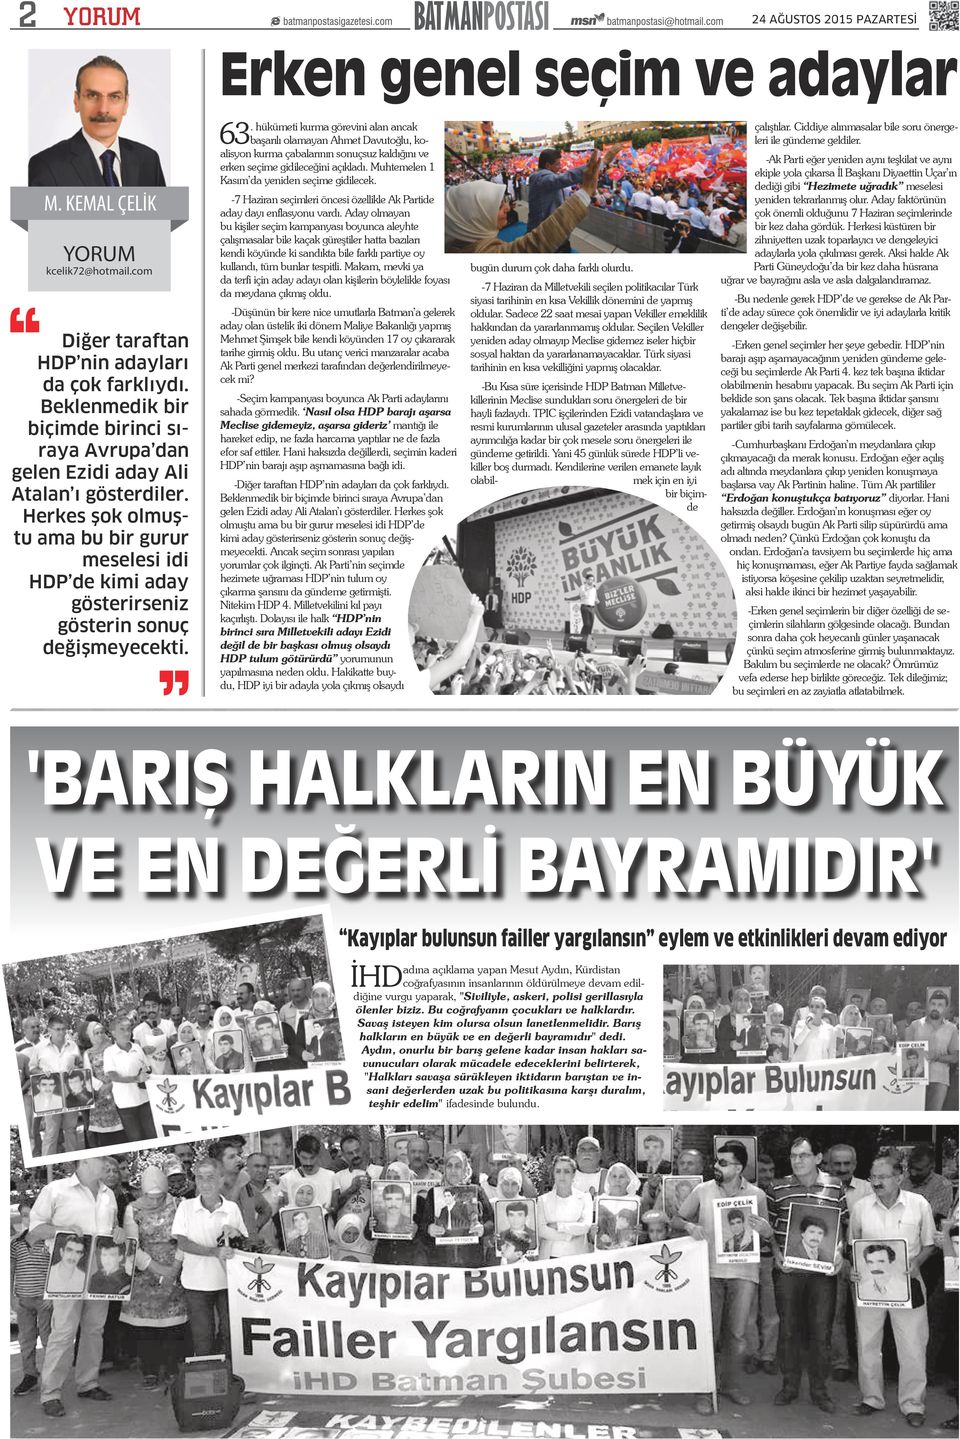 . hükümeti kurma görevini alan ancak 63 başarılı olamayan Ahmet Davutoğlu, koalisyon kurma çabalarının sonuçsuz kaldığını ve erken seçime gidileceğini açıkladı.